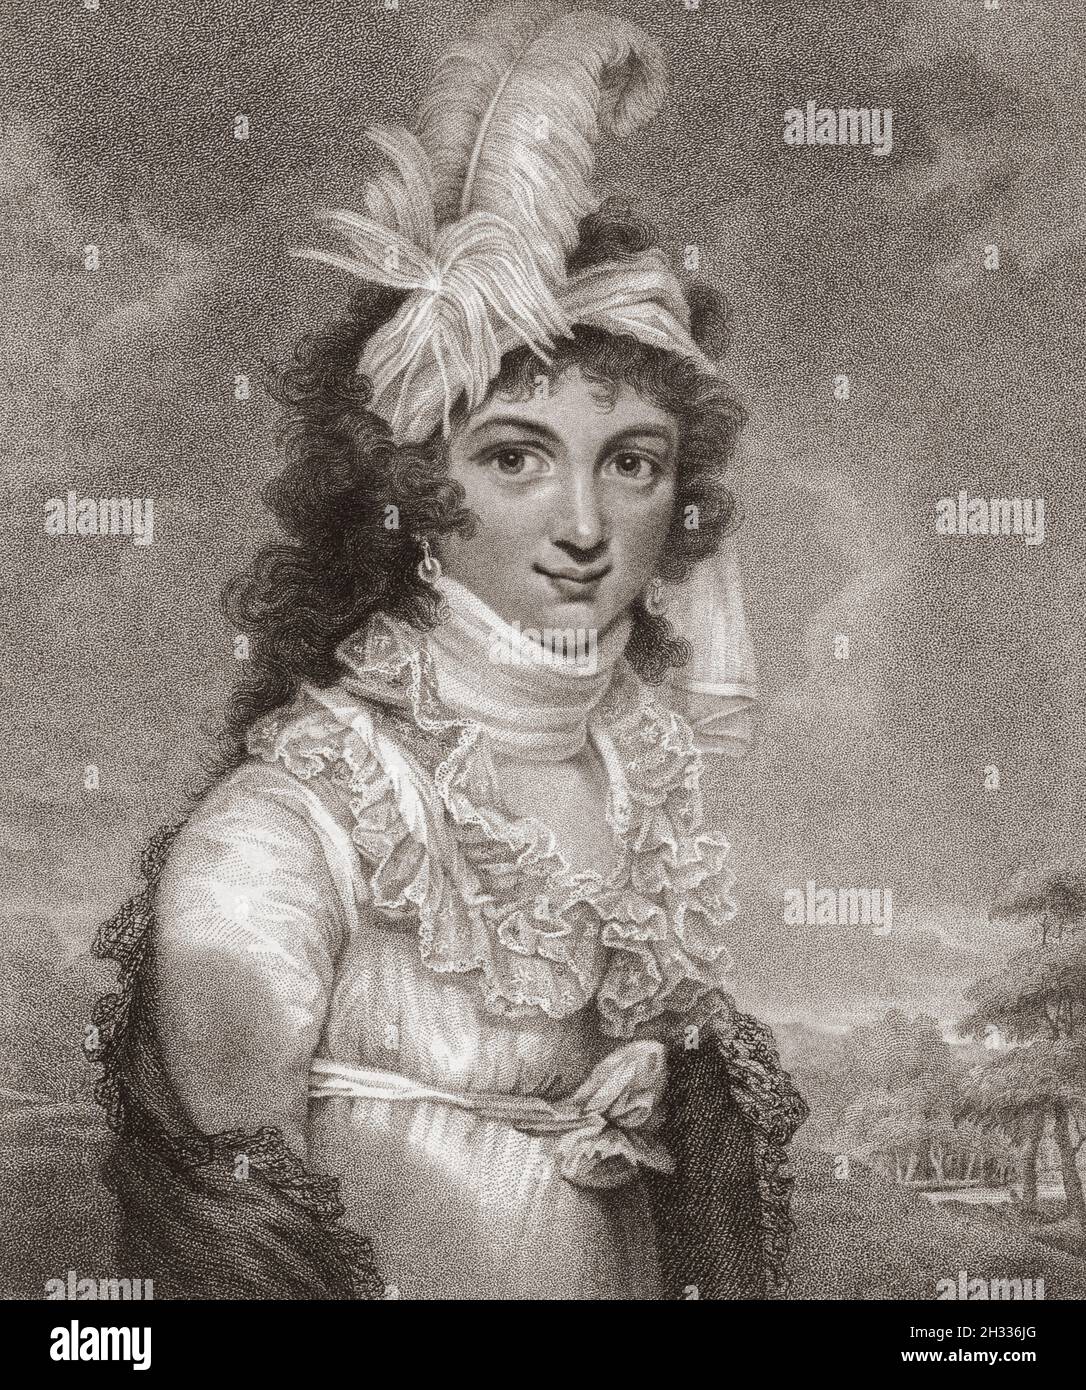 Caroline von Braunschweig, voller Name Caroline Amelia Elizabeth, 1768 – 1821. Königin des Vereinigten Königreichs und Hannover als Ehefrau von König Georg IV. Von 1795 bis 1820 war sie Prinzessin von Wales. Nach einem Stich von Willem van Senus aus dem 18. Jahrhundert nach einem Werk von John Raphael Smith. Stockfoto